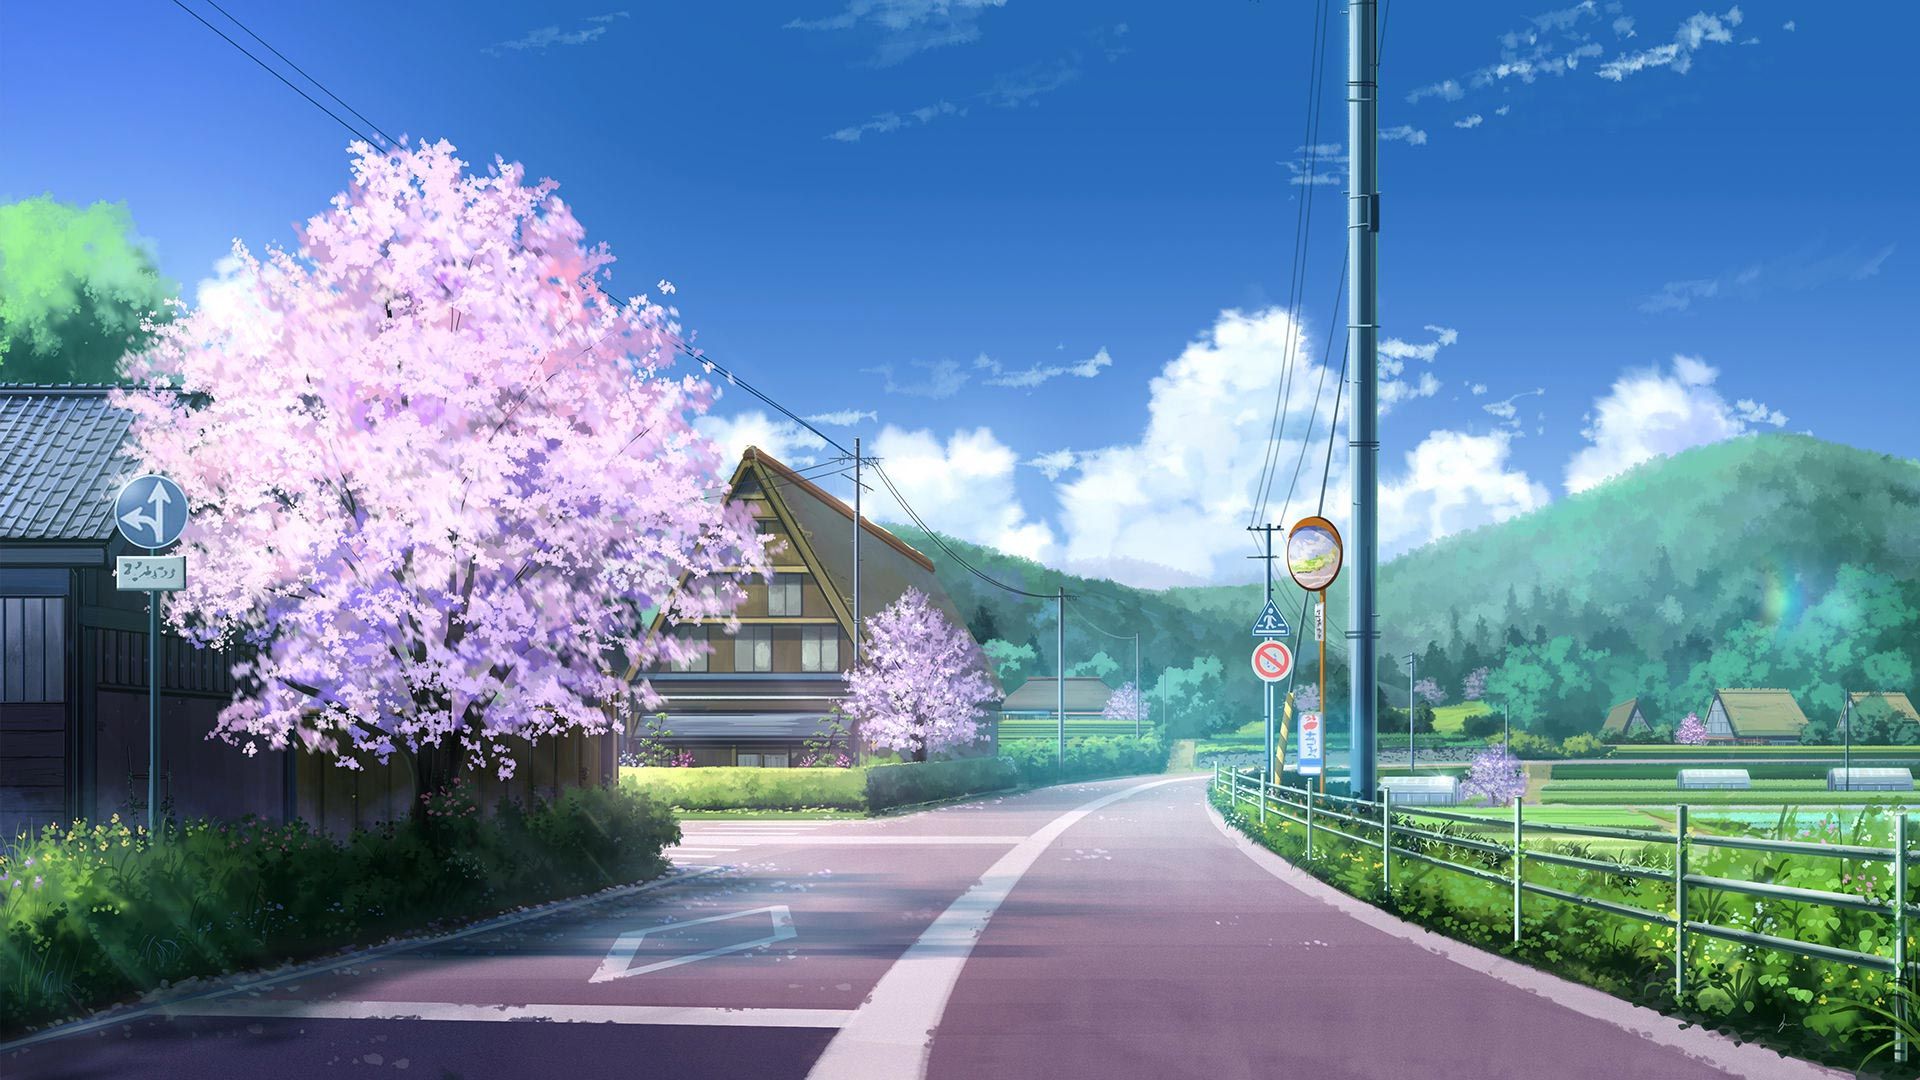 Thưởng thức những cảnh đẹp như trong Anime tại Anime Landscapes Theme. Với những hình ảnh chất lượng, bạn sẽ cảm nhận được mình đang sống trong thế giới của nhân vật Anime.